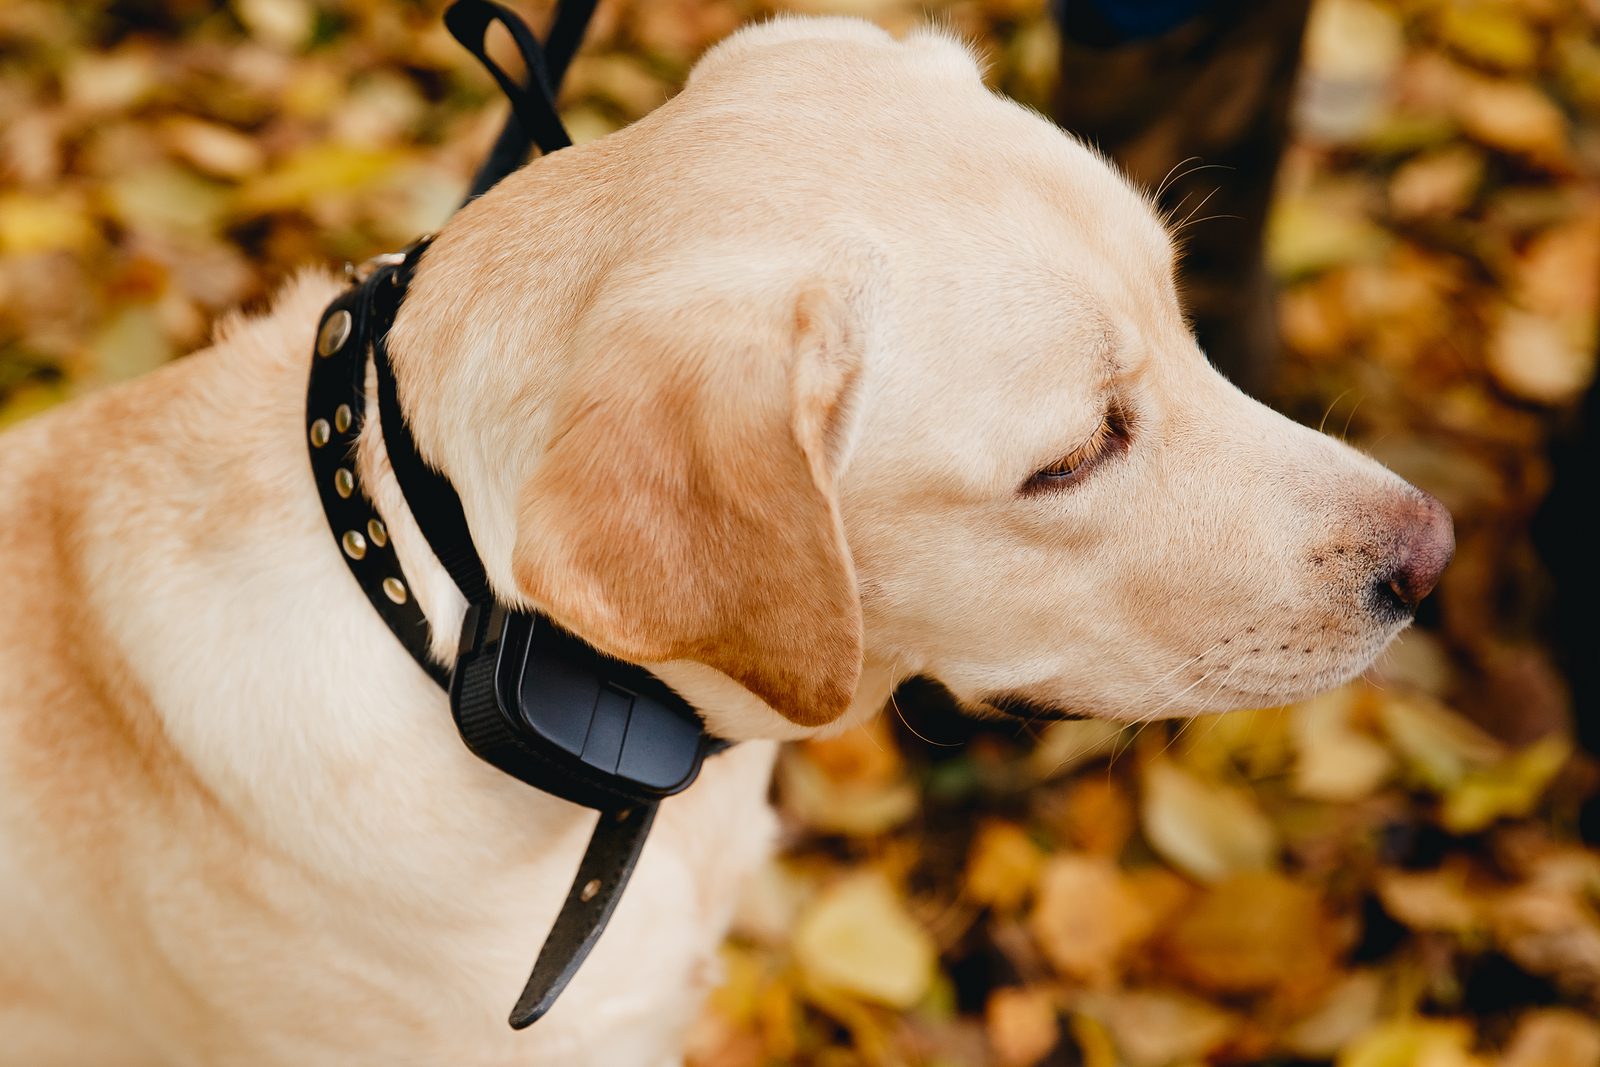 dog golden retriever wearing shock collar e collar outdoors fall